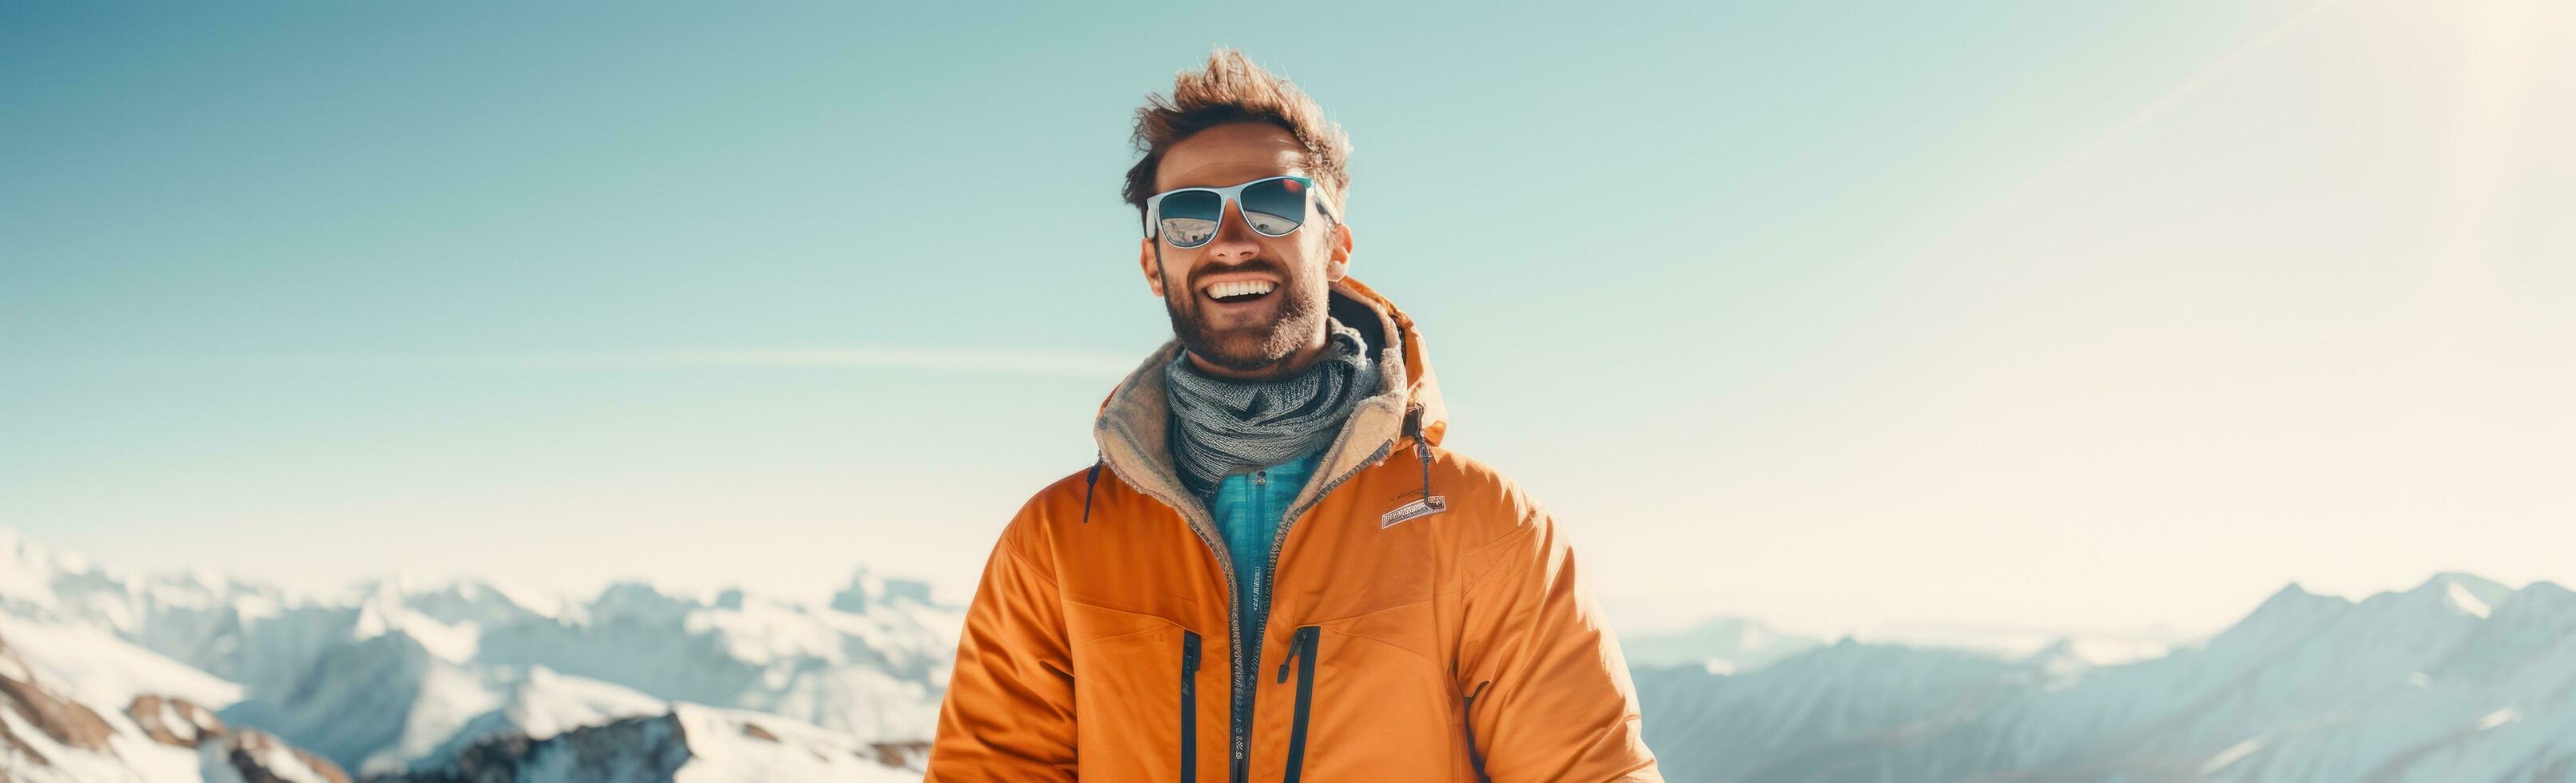 un homme ski sur une neigeux Montagne photo